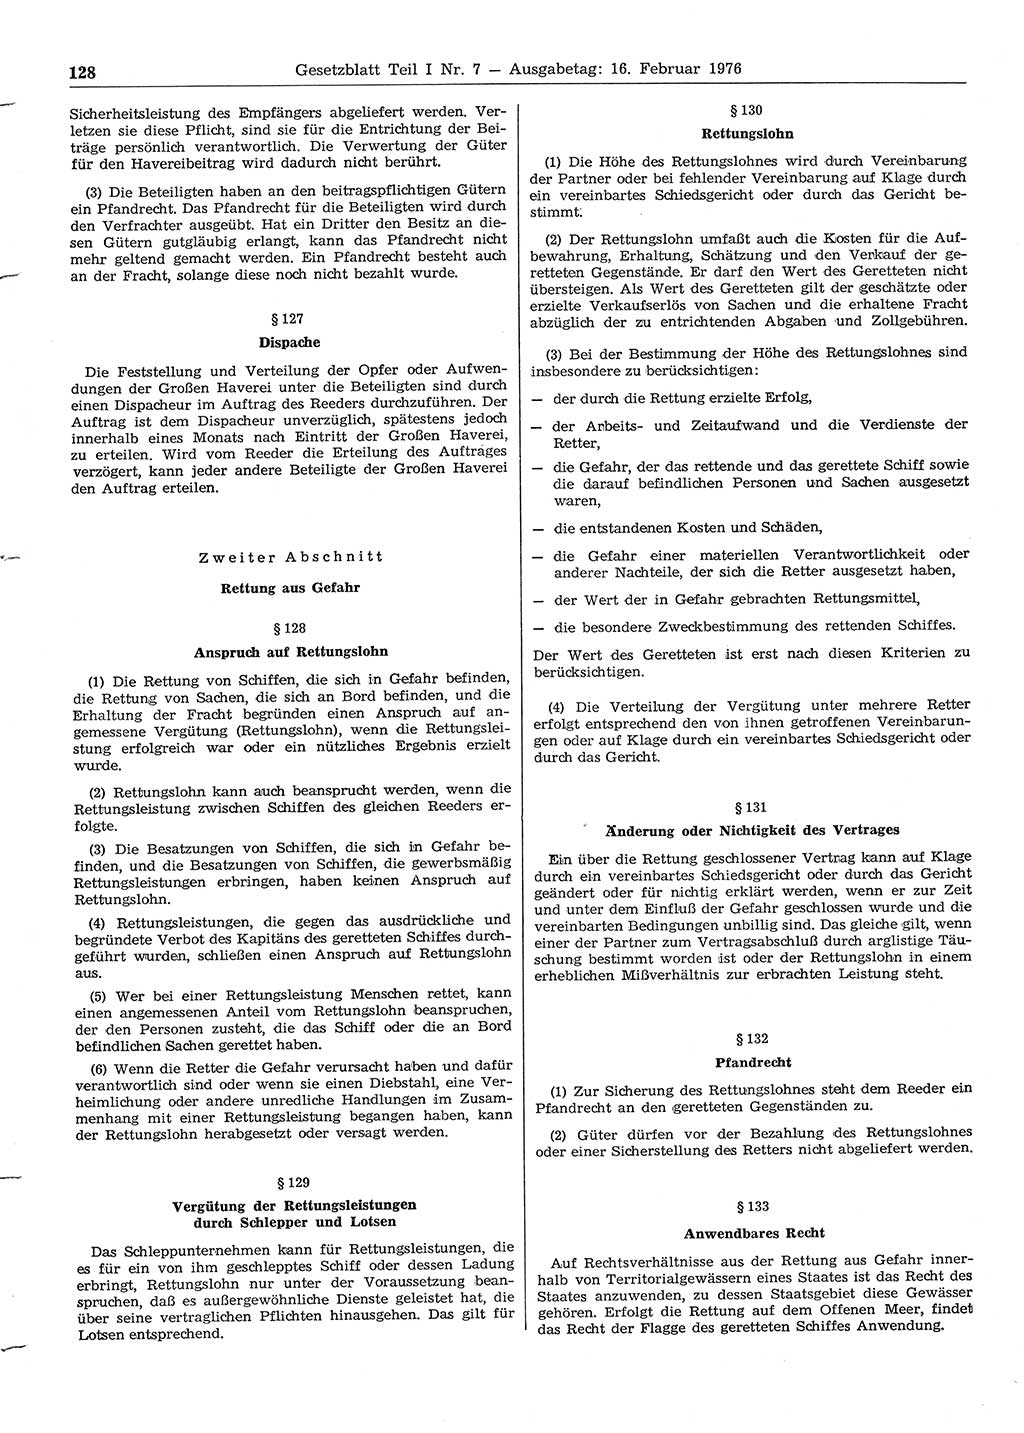 Gesetzblatt (GBl.) der Deutschen Demokratischen Republik (DDR) Teil Ⅰ 1976, Seite 128 (GBl. DDR Ⅰ 1976, S. 128)